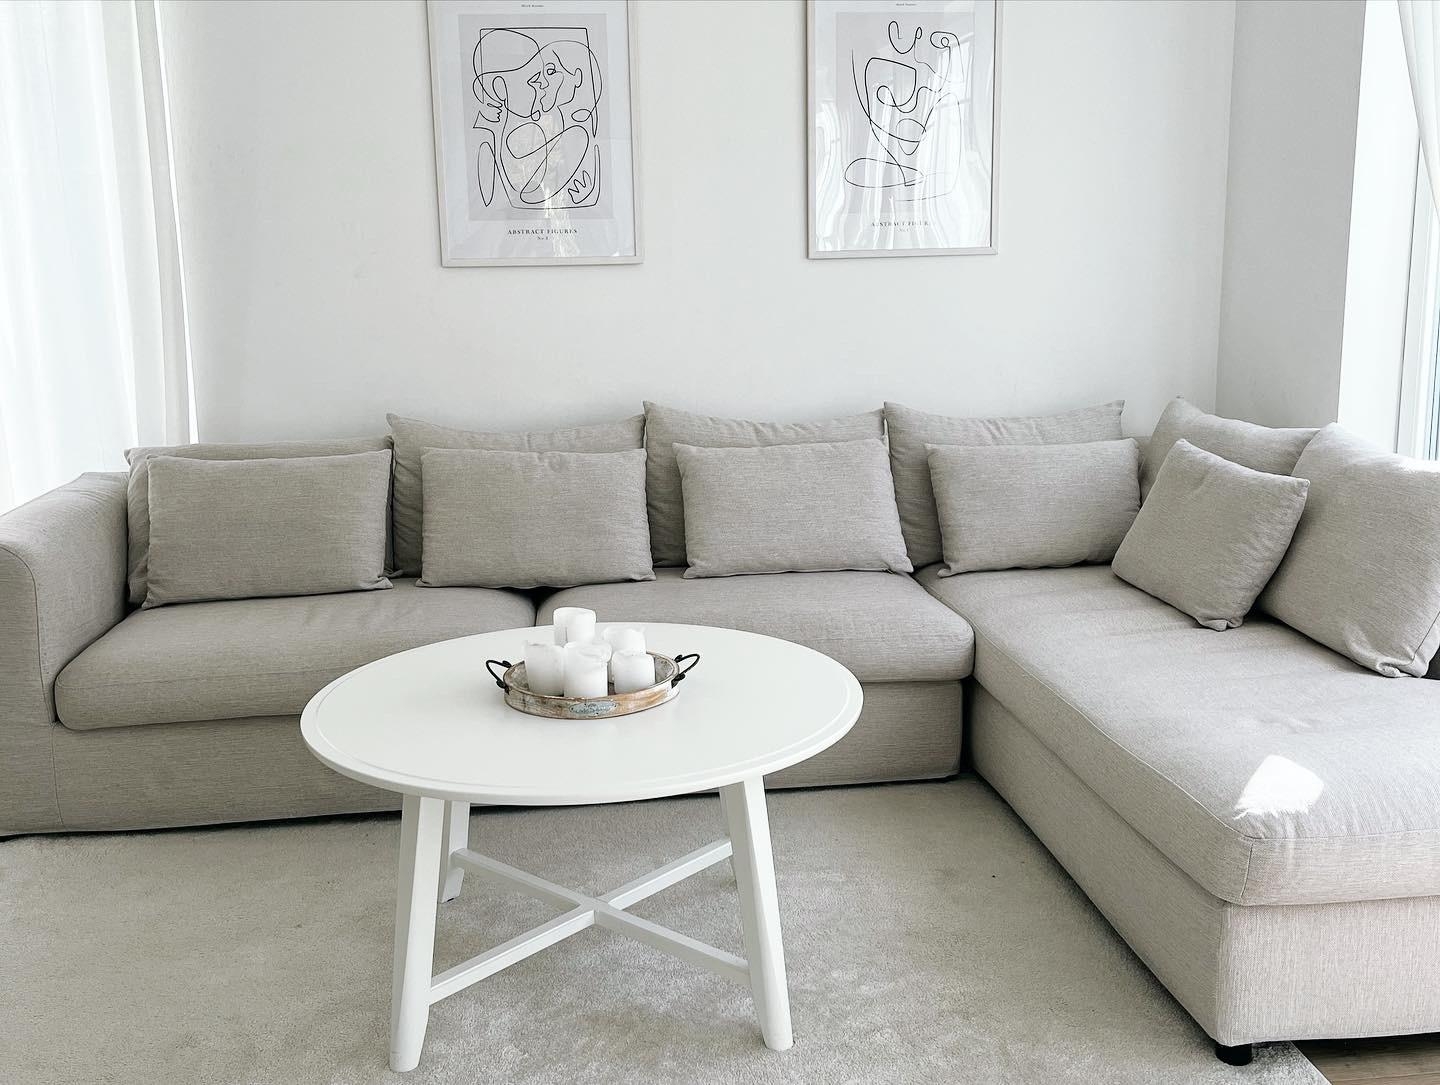 Das ist unsere gemütliche Couch🤍

#couch #couchstyle #beigeliebe 